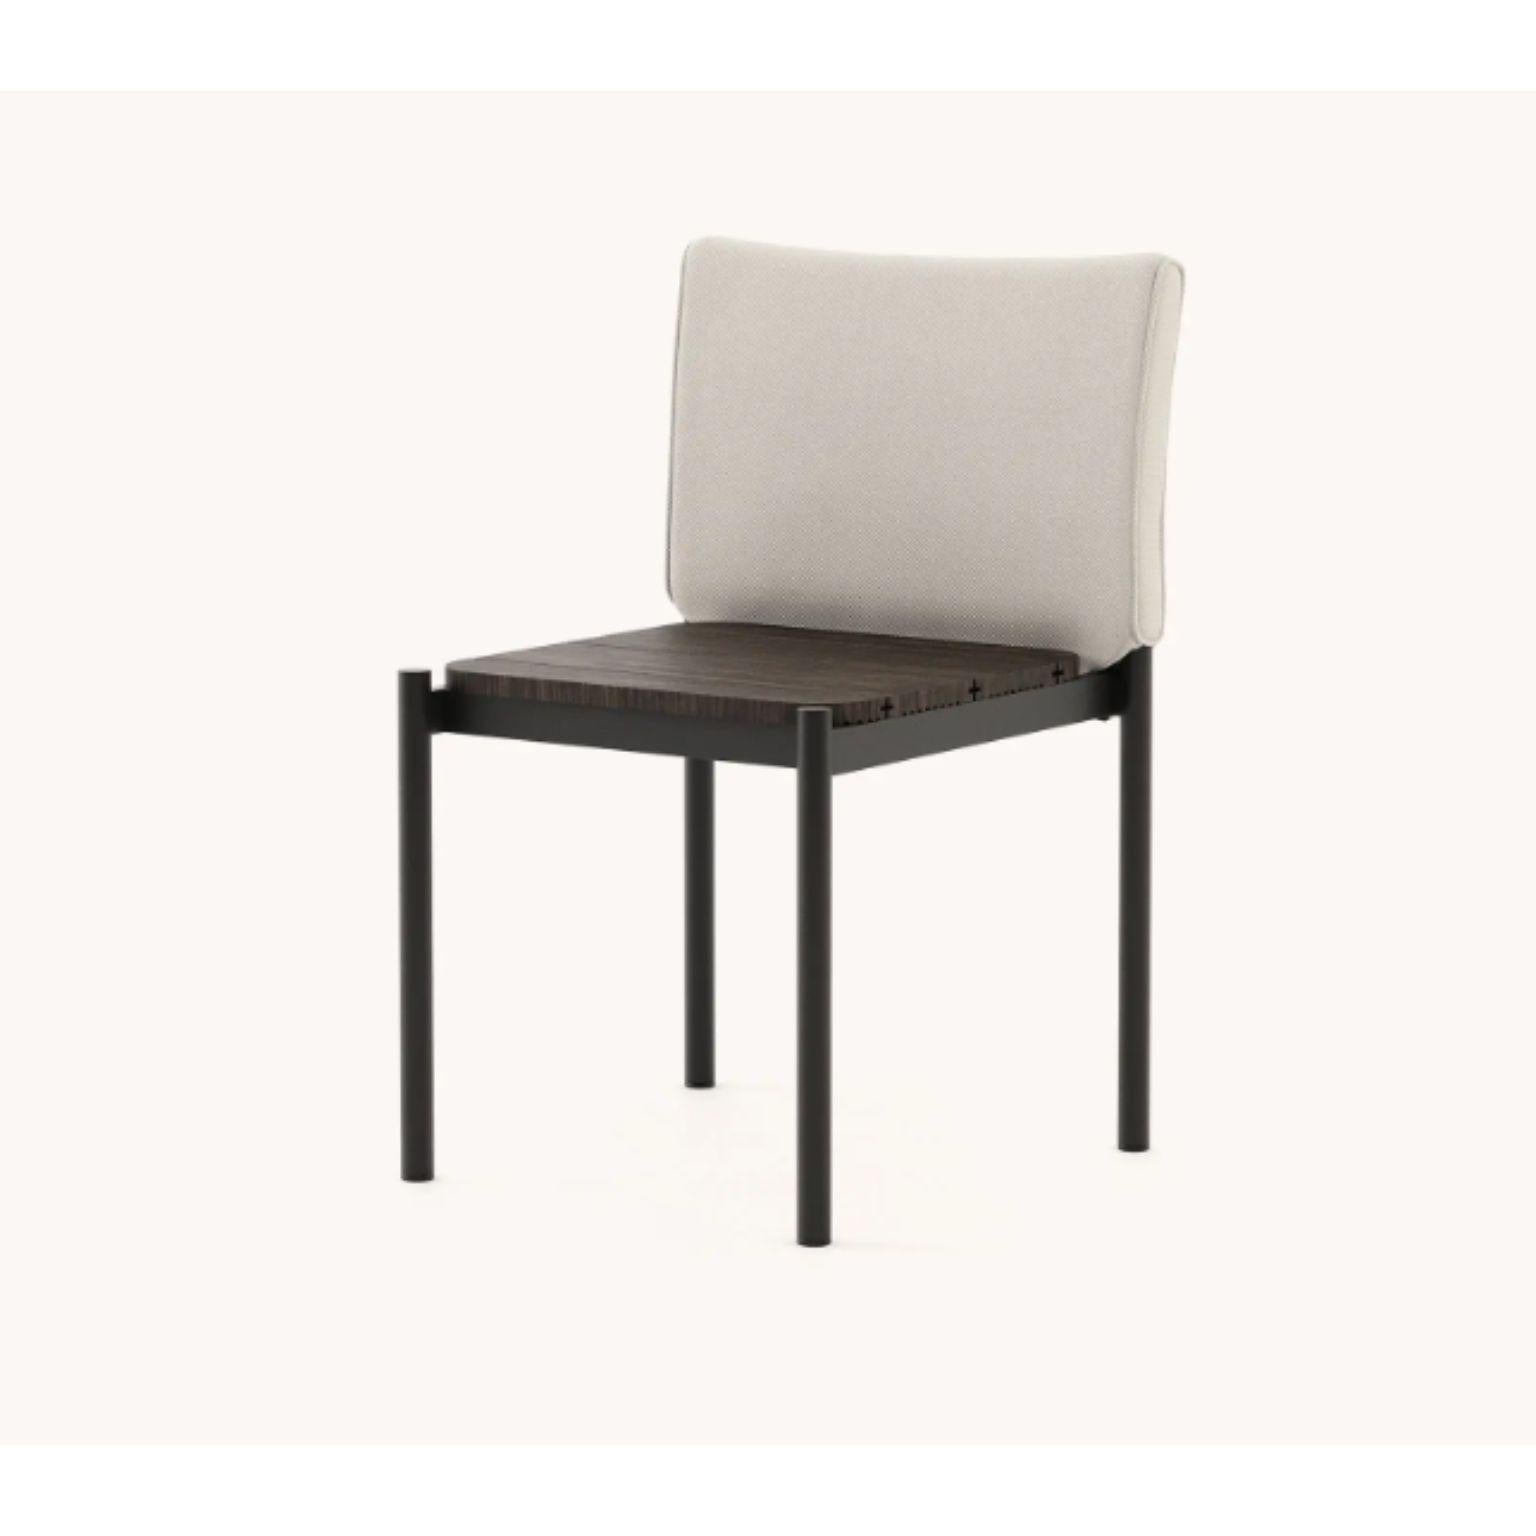 Copacabana stuhl ohne armlehne by Domkapa
MATERIALIEN: Schwarzer texturierter Edelstahl, Bambusholz, Stoff (Rhine Ice).
Abmessungen: B 55 x T 55,5 x H 84,5 cm.
Auch in verschiedenen MATERIALEN erhältlich.

Der Copacabana-Stuhl ist hier, um die